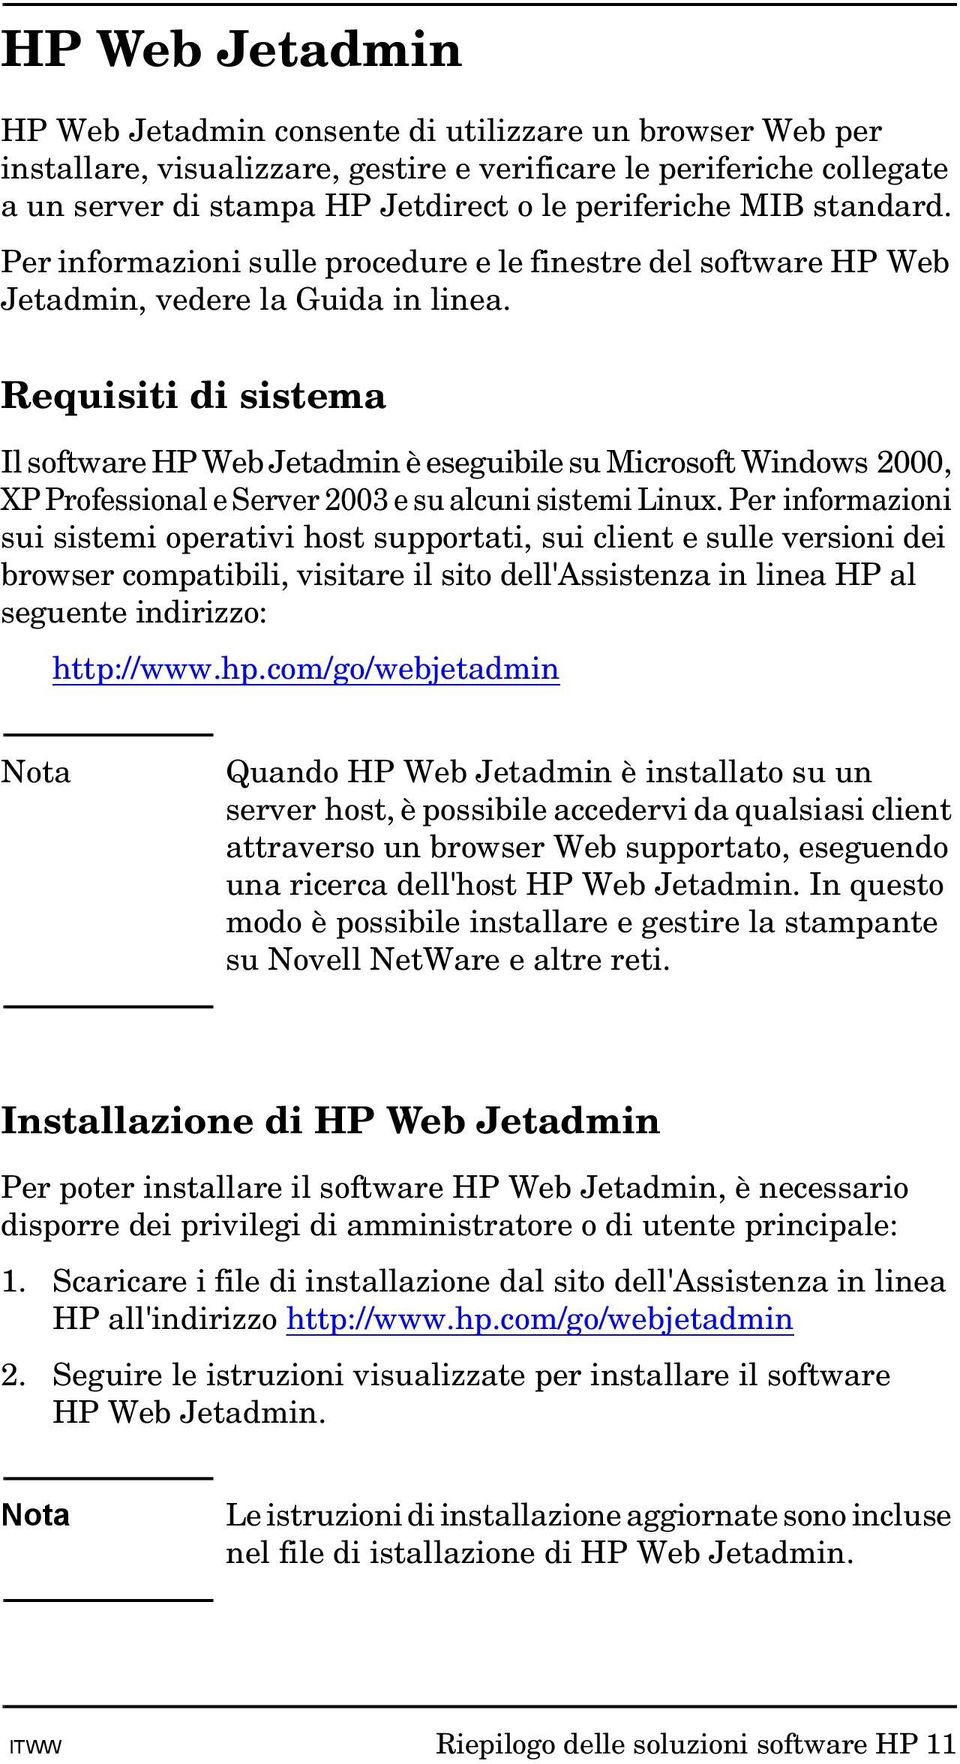 Requisiti di sistema Il software HP Web Jetadmin è eseguibile su Microsoft Windows 2000, XP Professional e Server 2003 e su alcuni sistemi Linux.